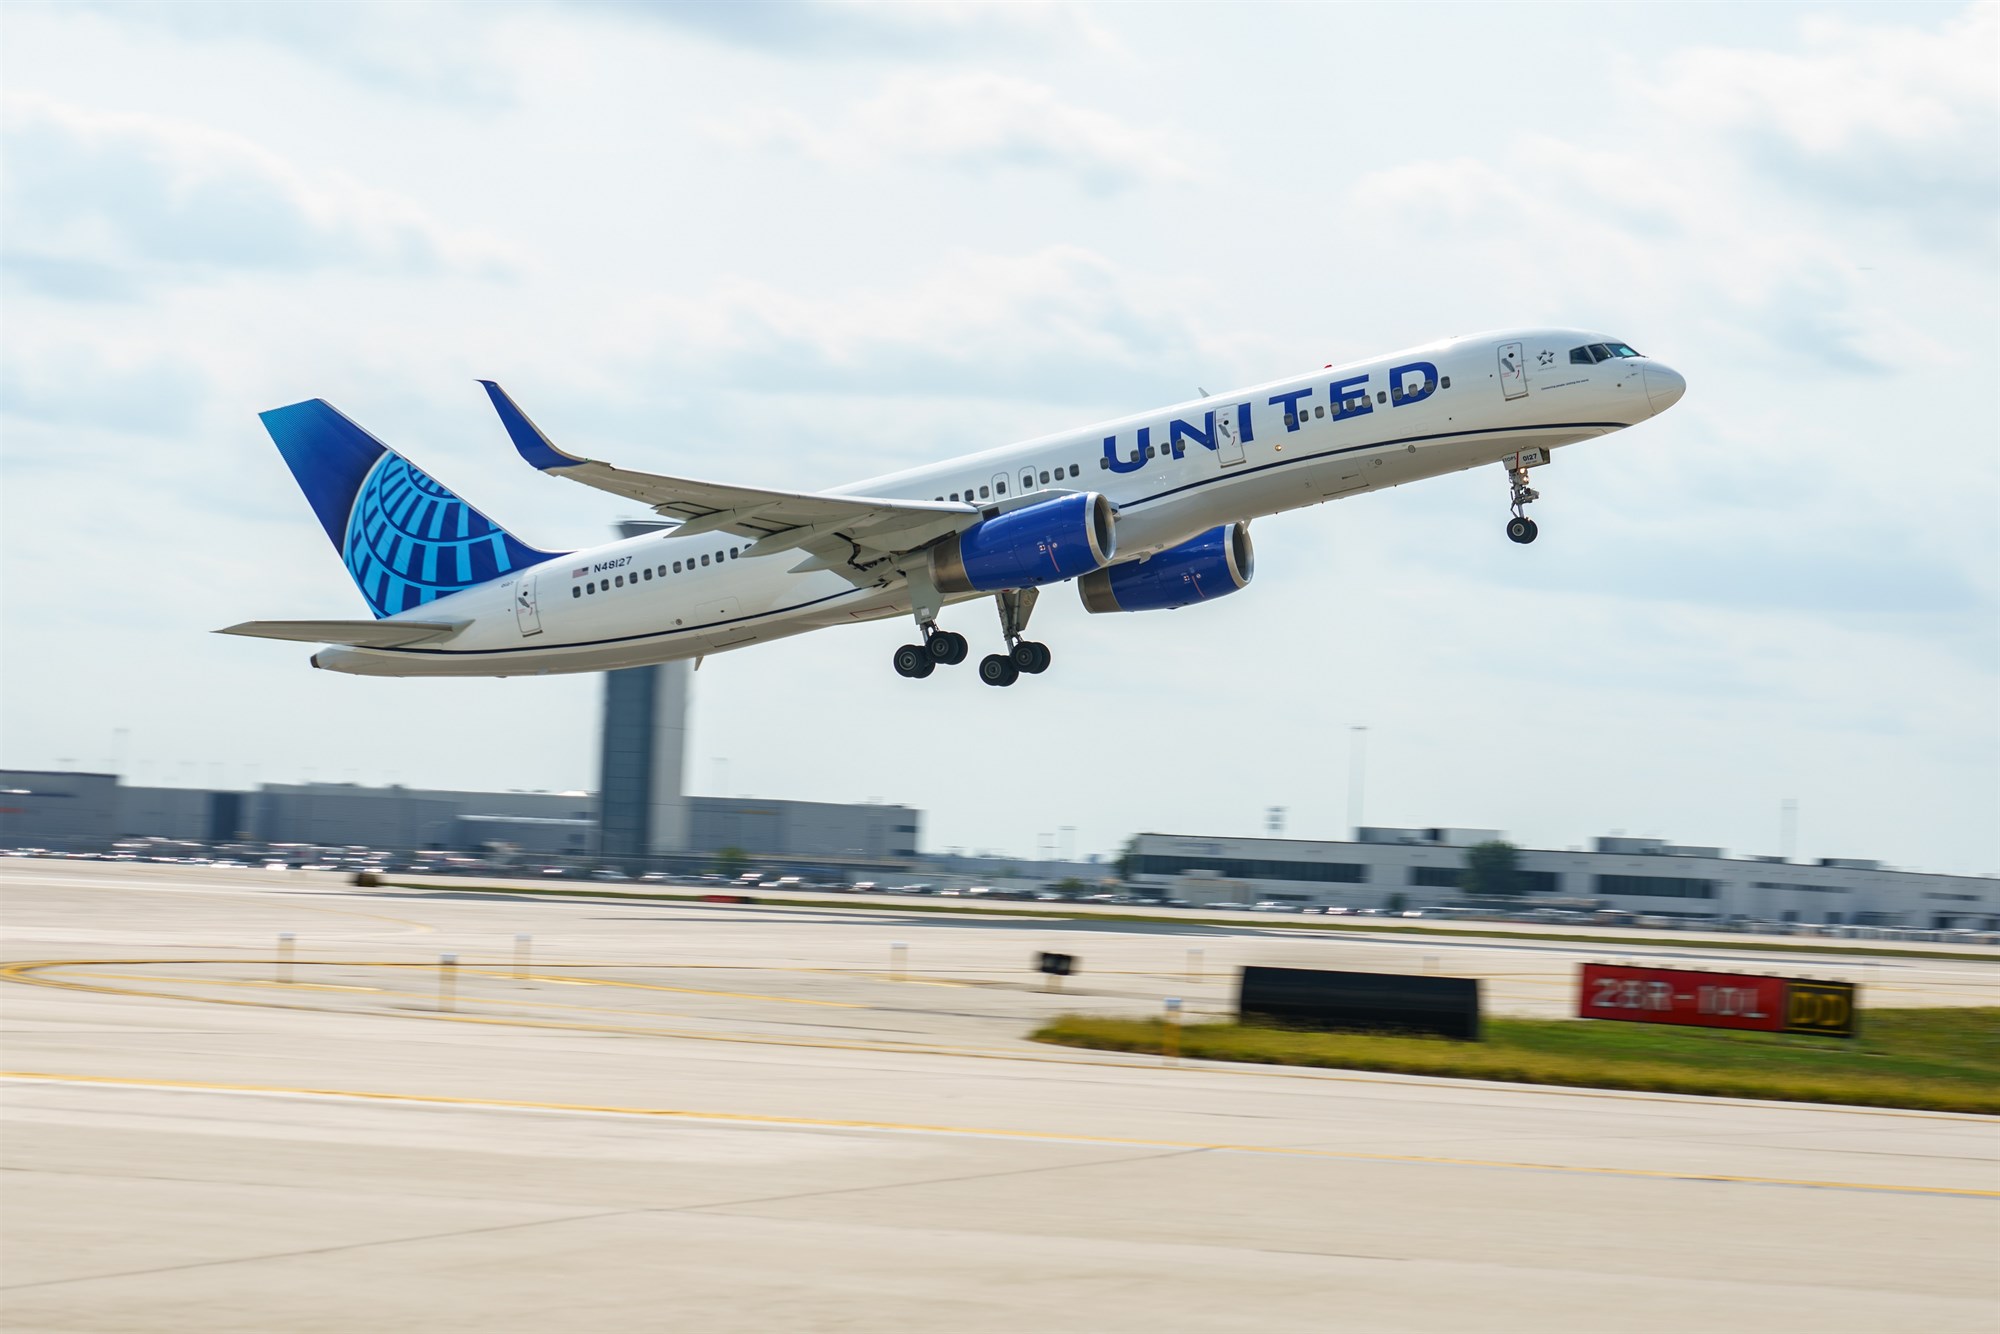 United Airlines hefur á ný flug milli Keflavíkur og New York